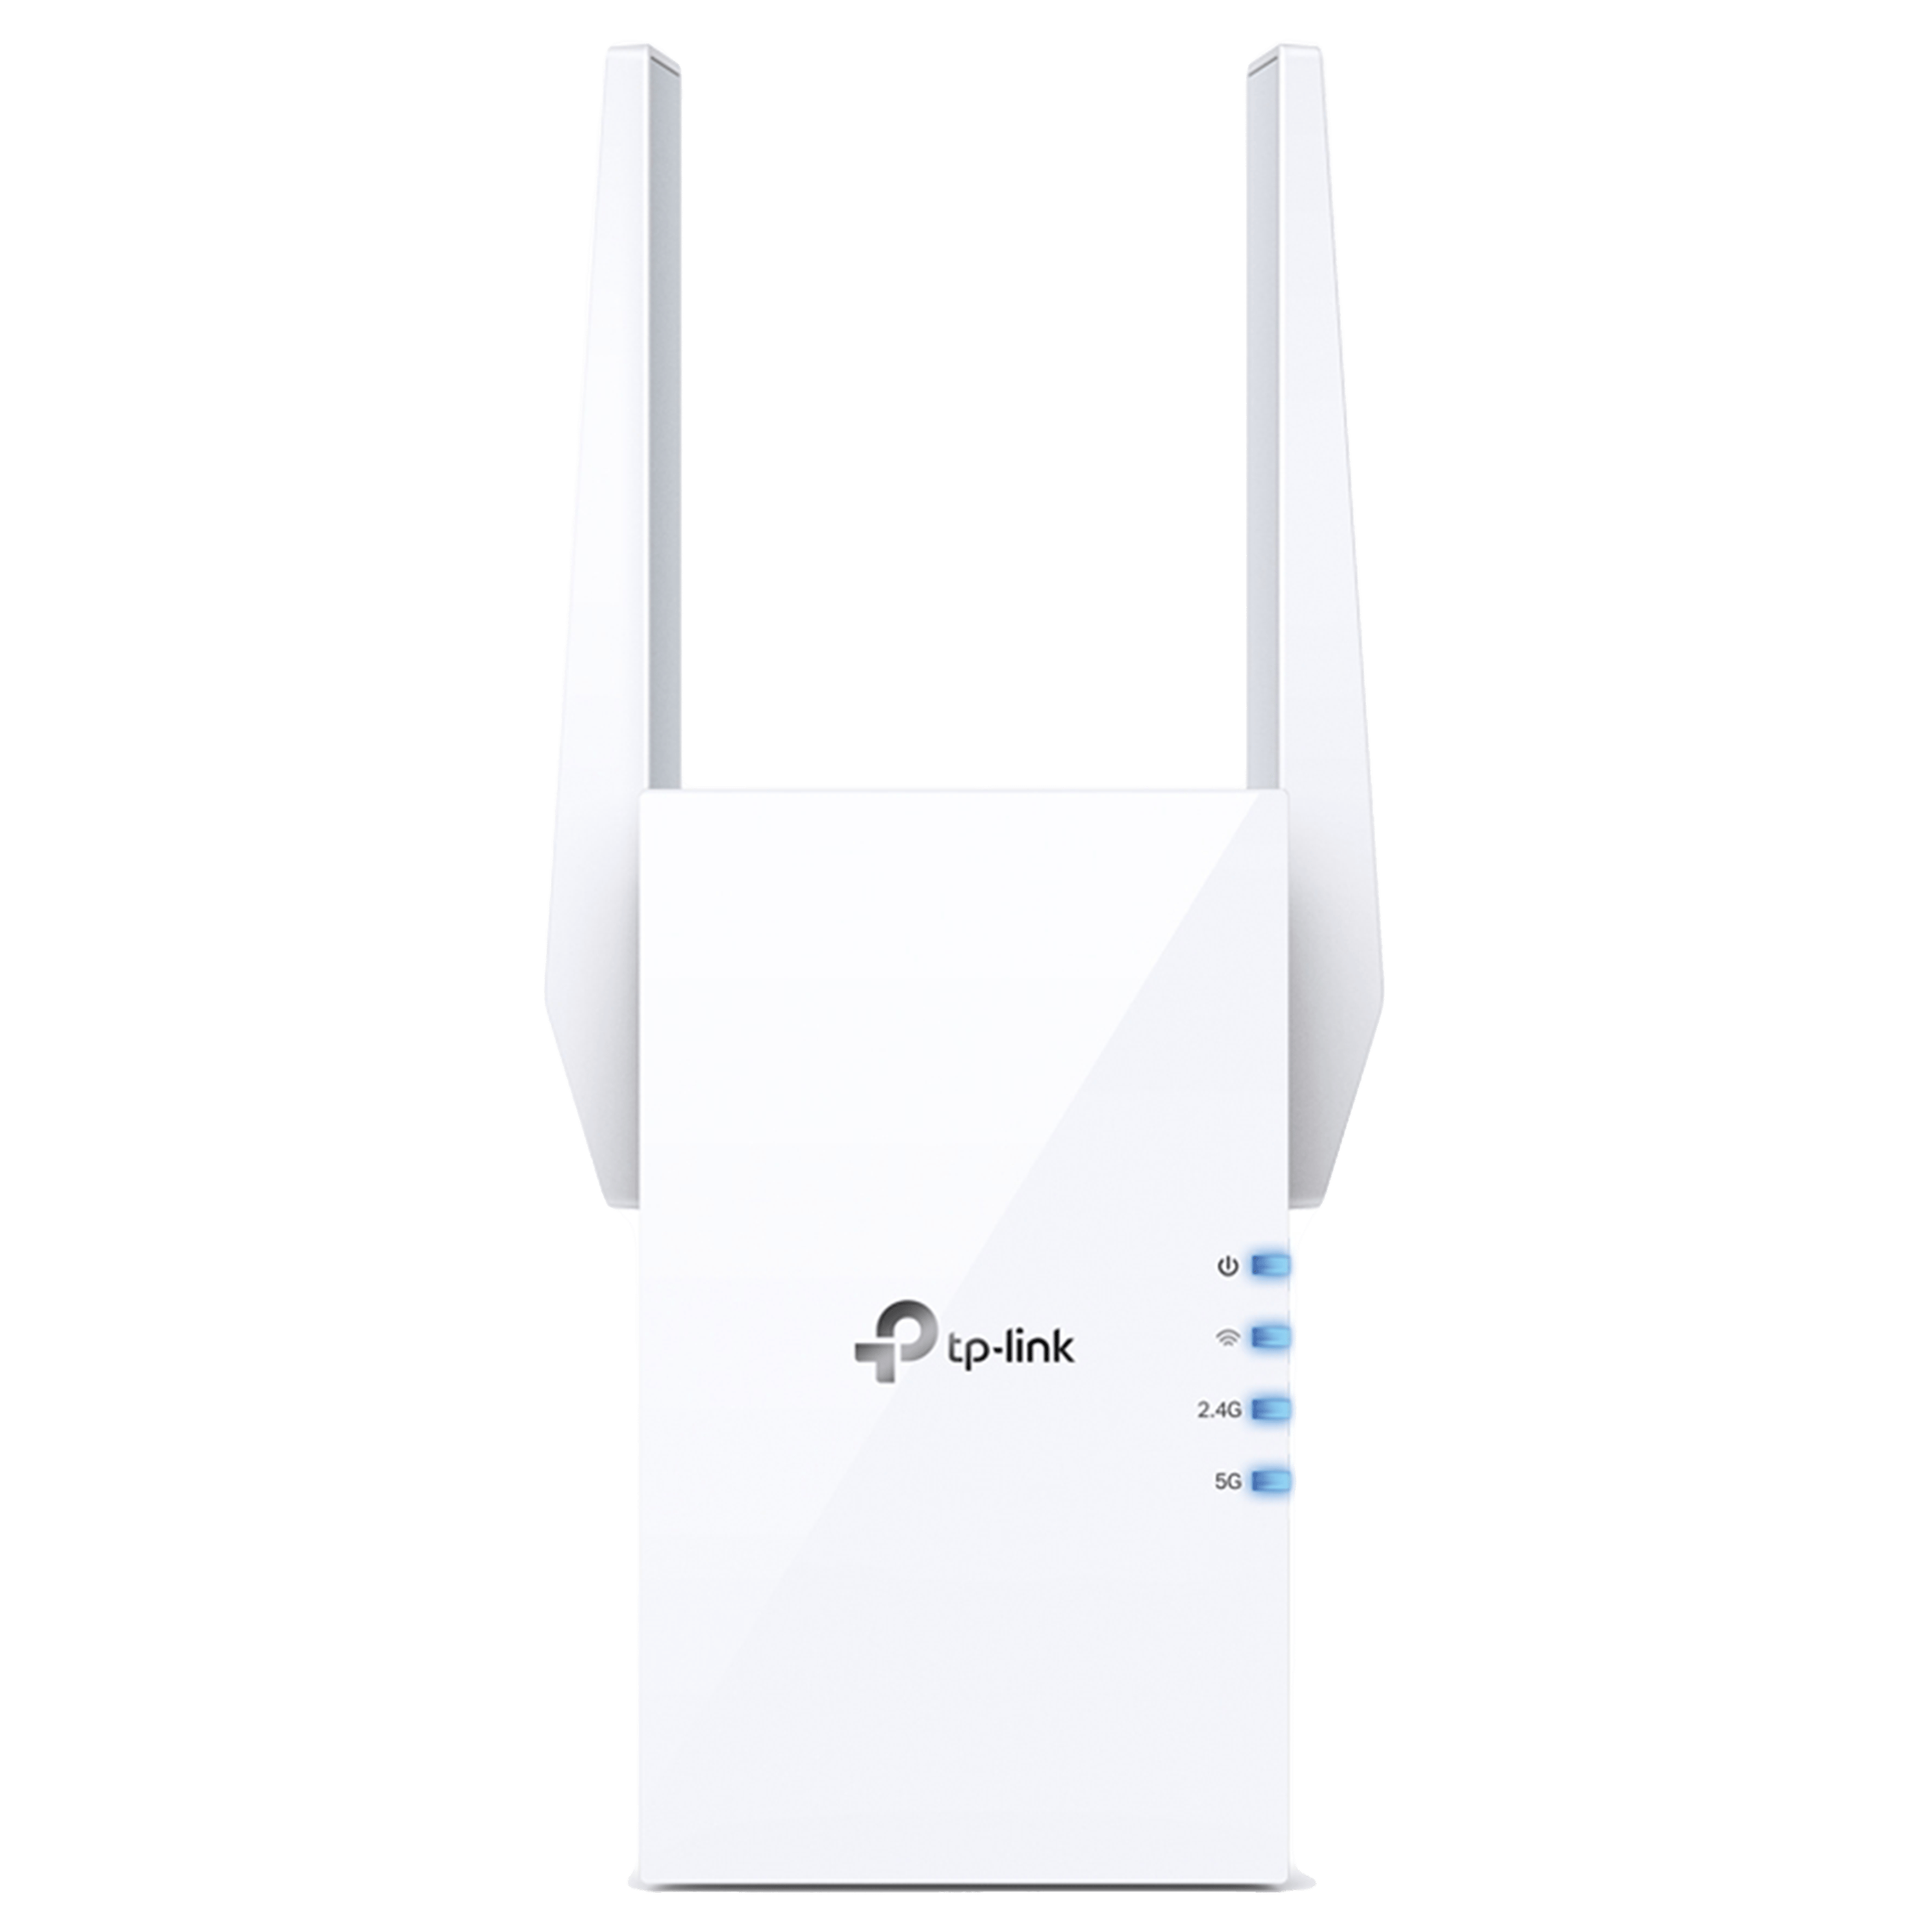 מגדיל טווח TP-Link RE605X AX1800 Wi-Fi 6 Range Extender - בצבע לבן שלוש שנות אחריות ע